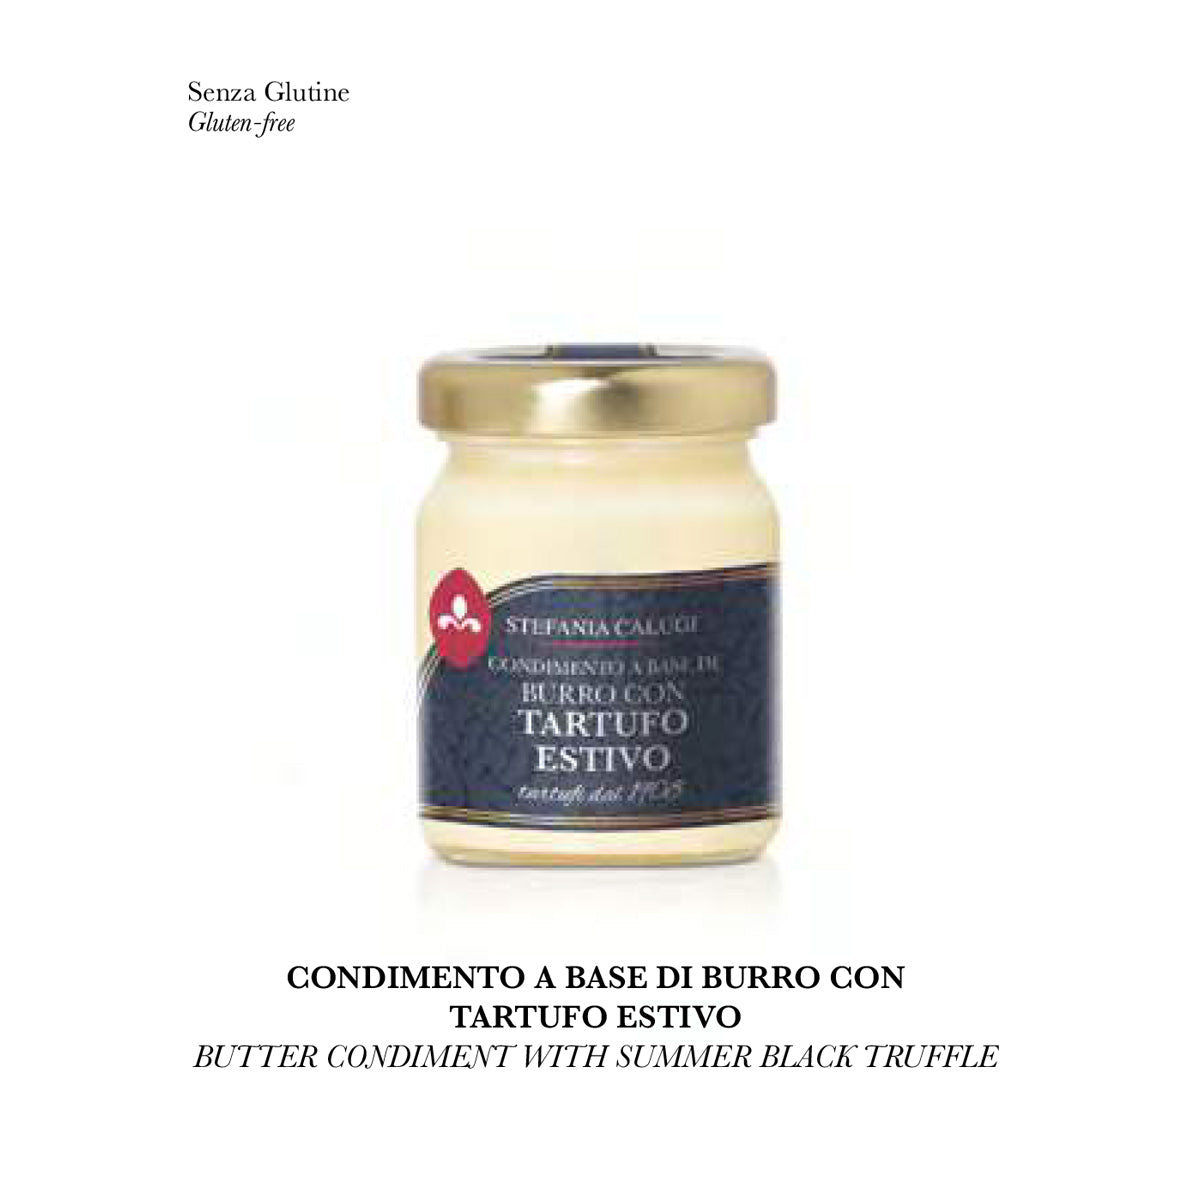 Butter Condiment With Summer Black Truffle / Condimento A Base Di Burro Con Tartufo Estivo 45g